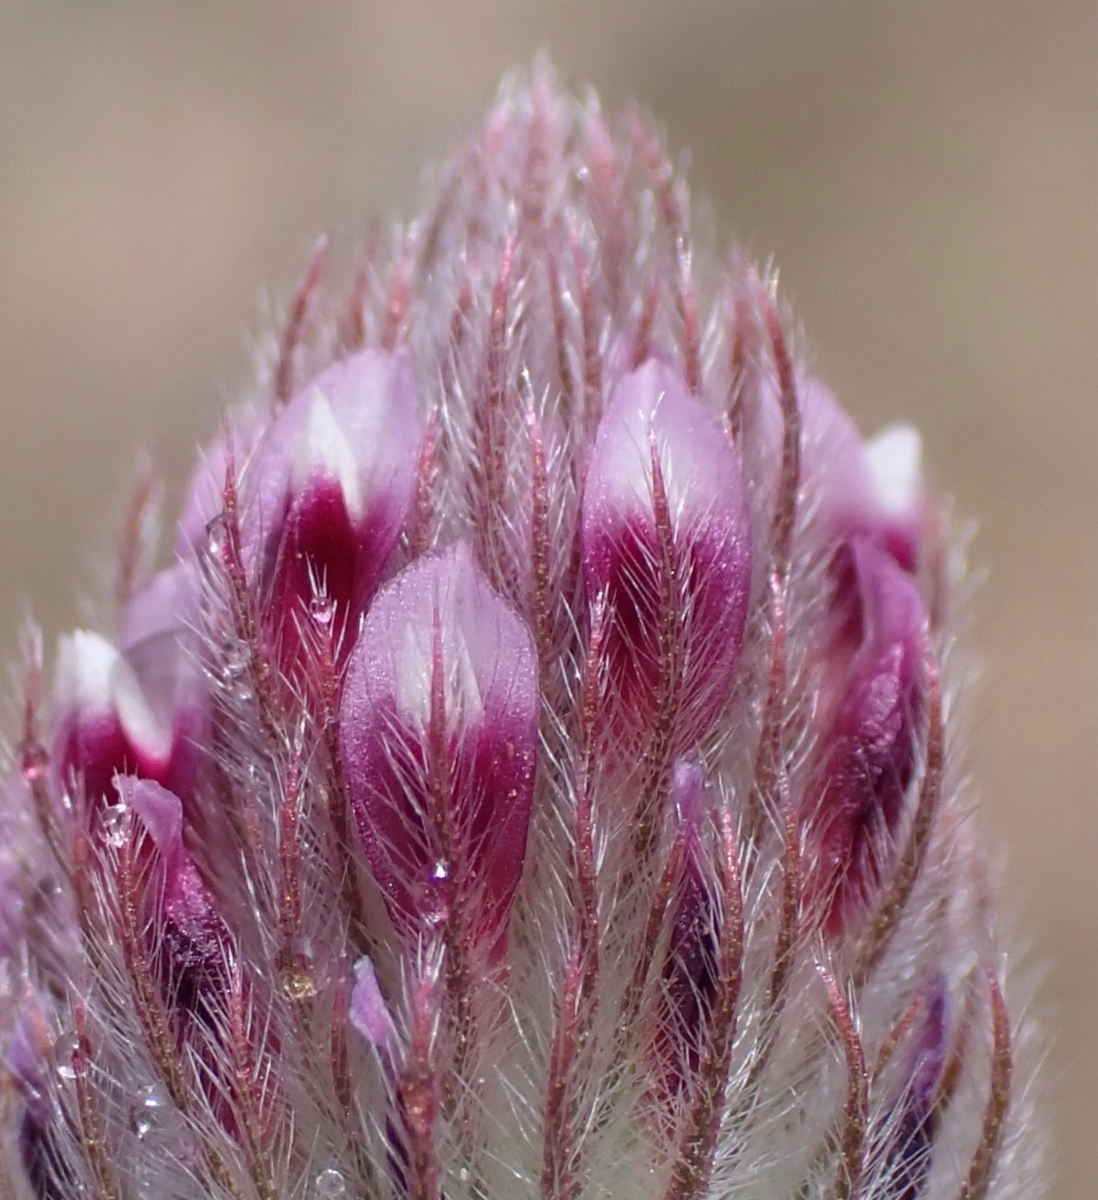 Trifolium albopurpureum